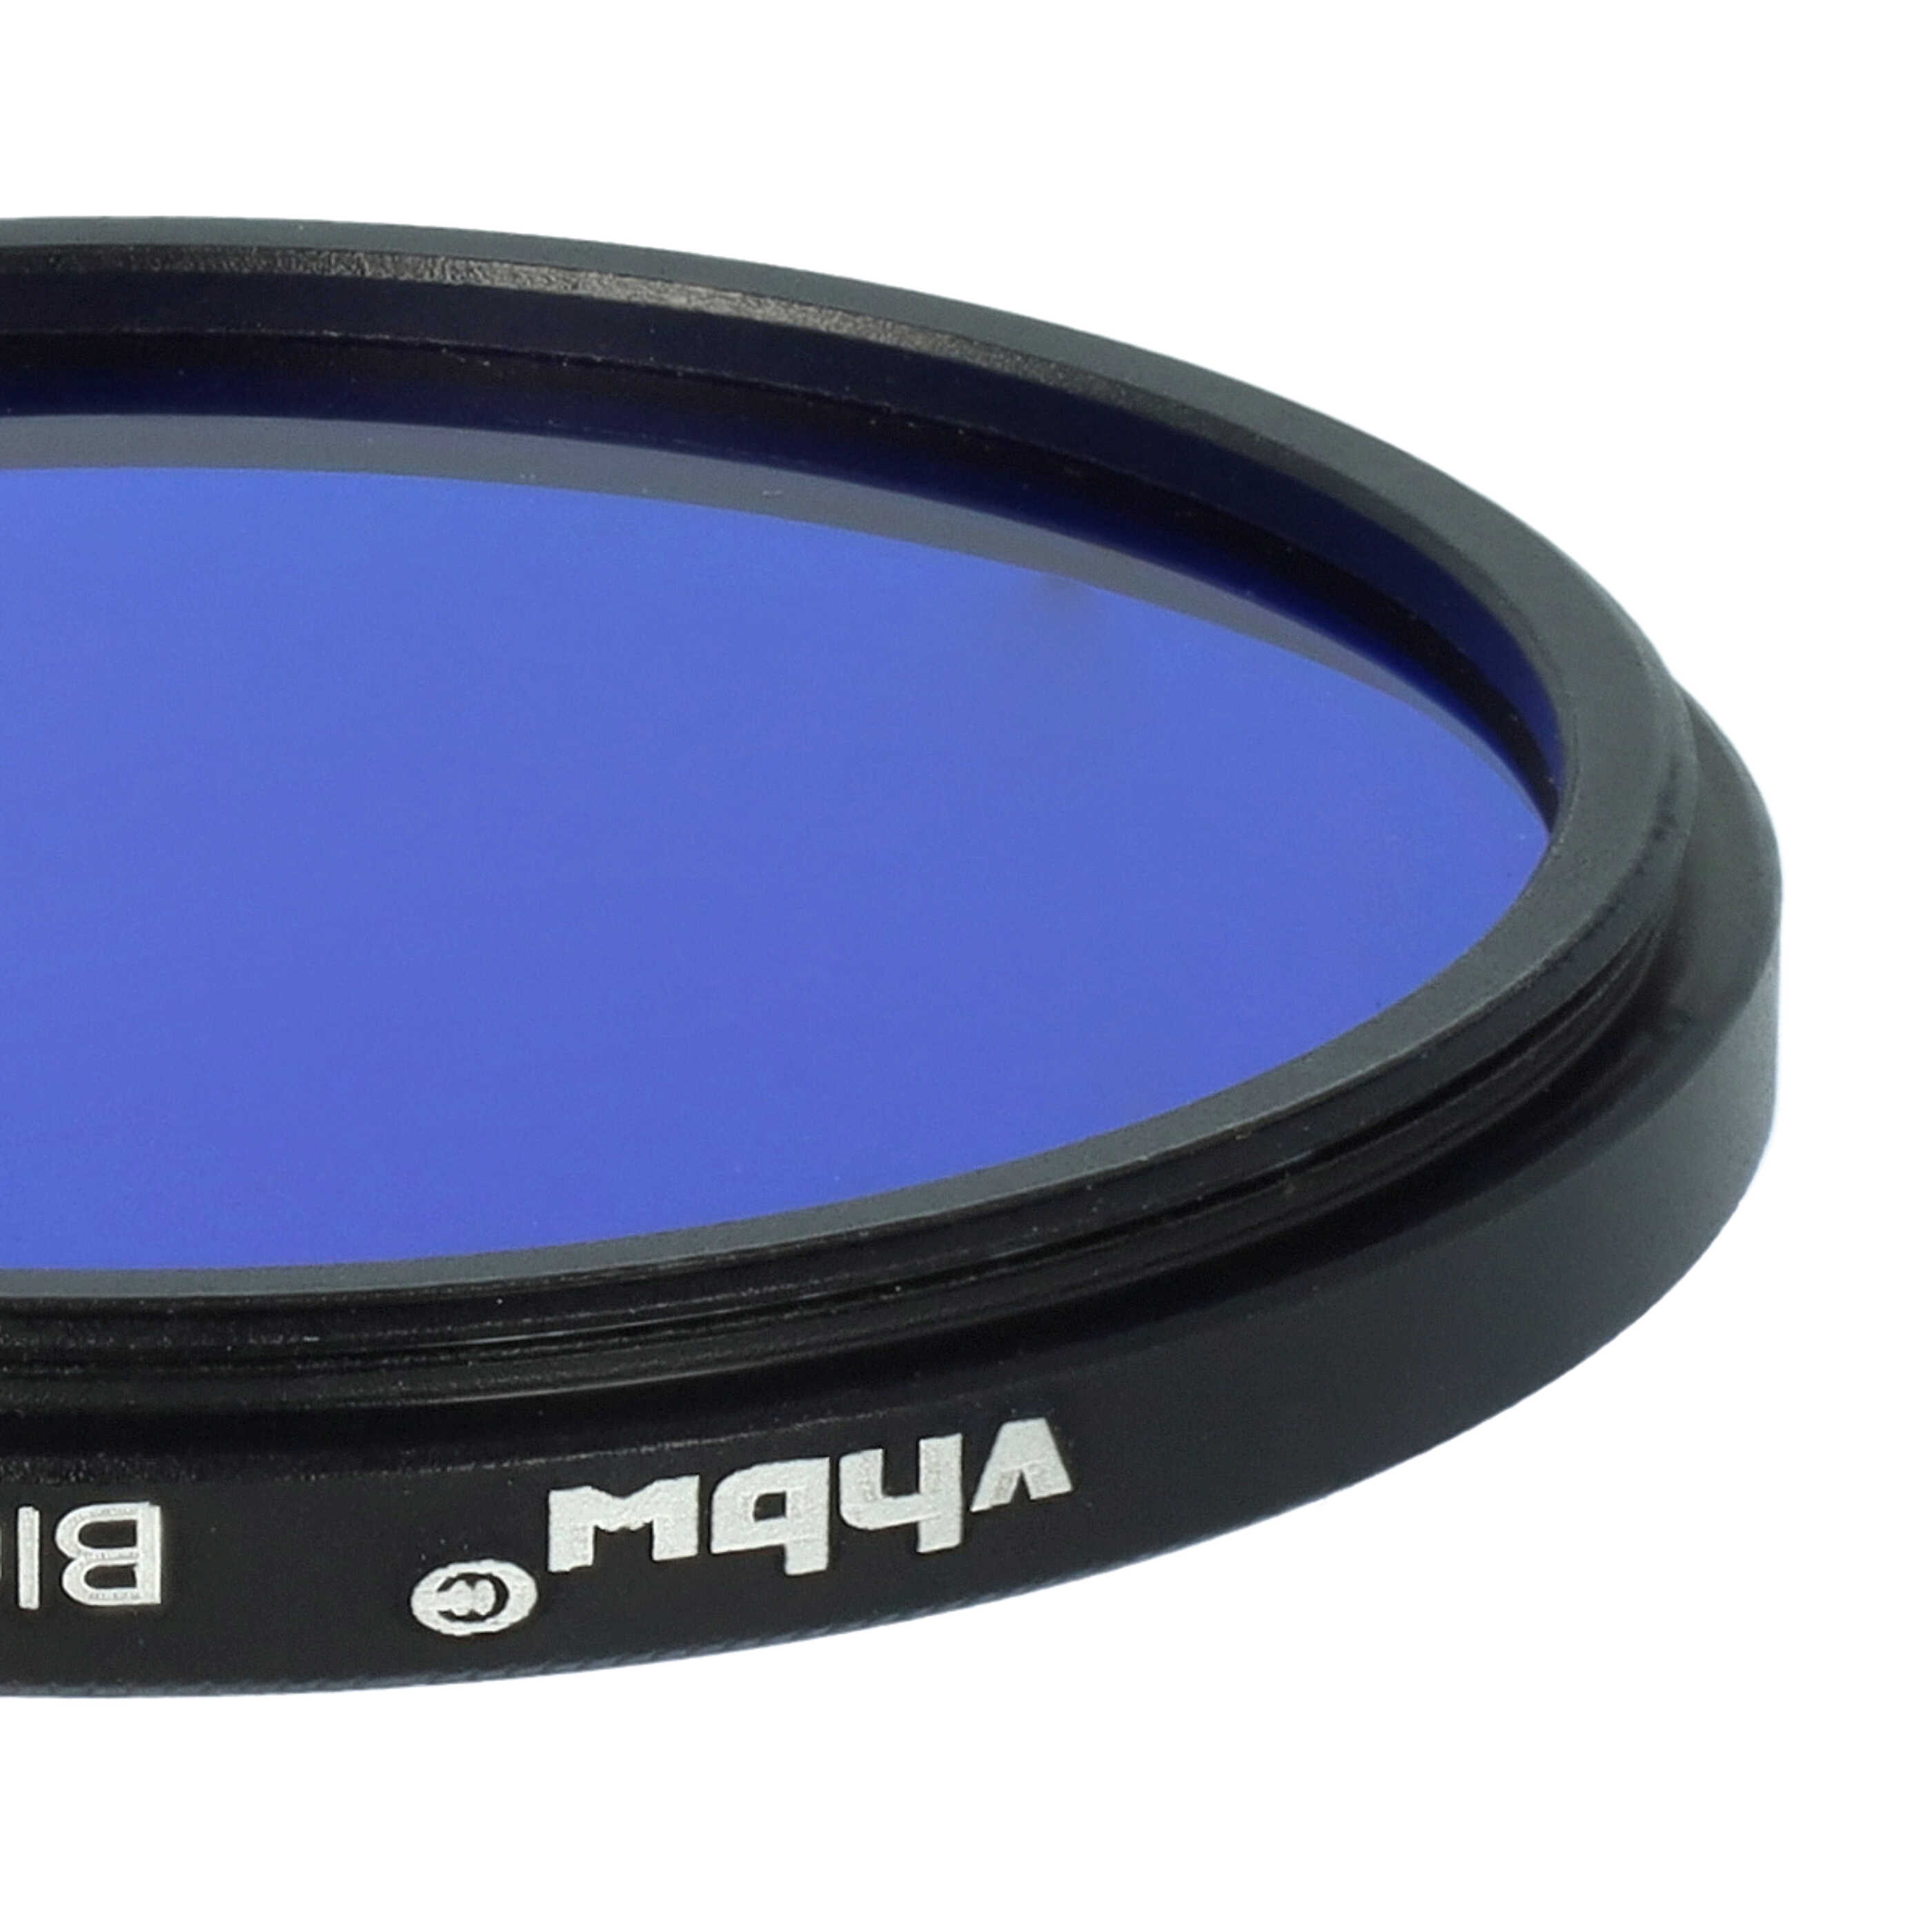 Filtre de couleur bleu pour objectifs d'appareils photo de 52 mm - Filtre bleu